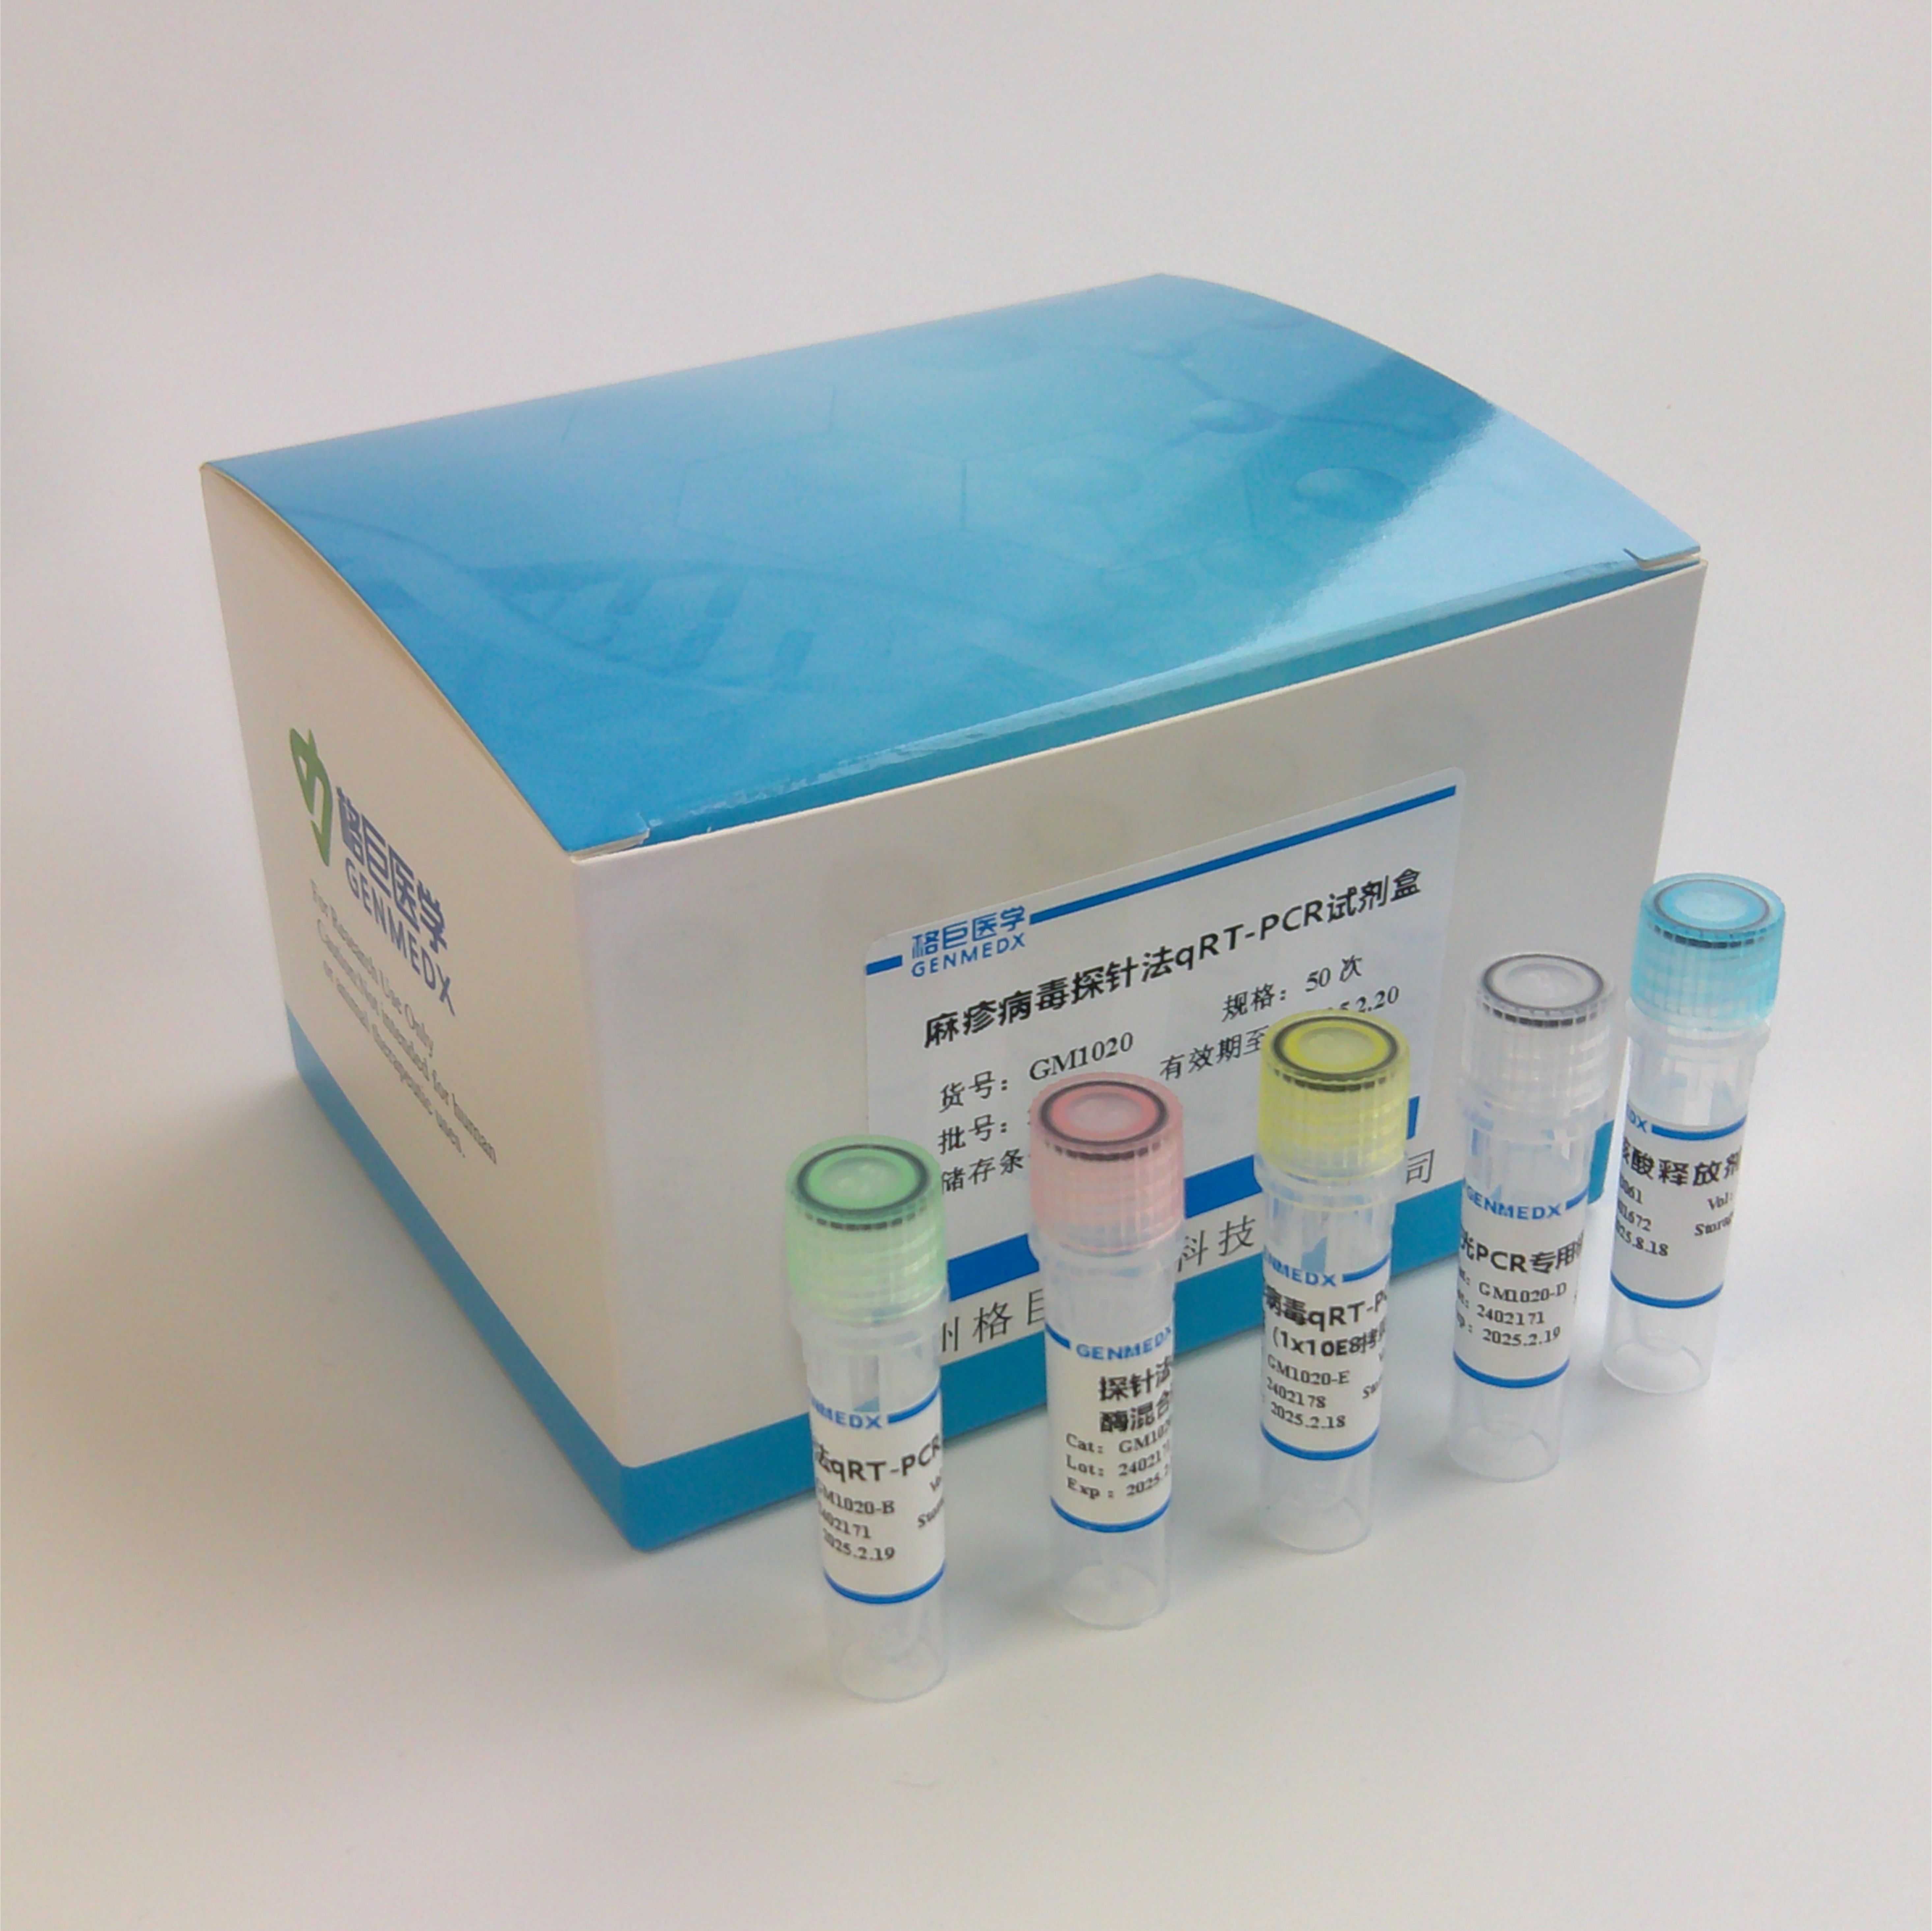 毛霉菌属(Mucor)探针法荧光定量PCR试剂盒